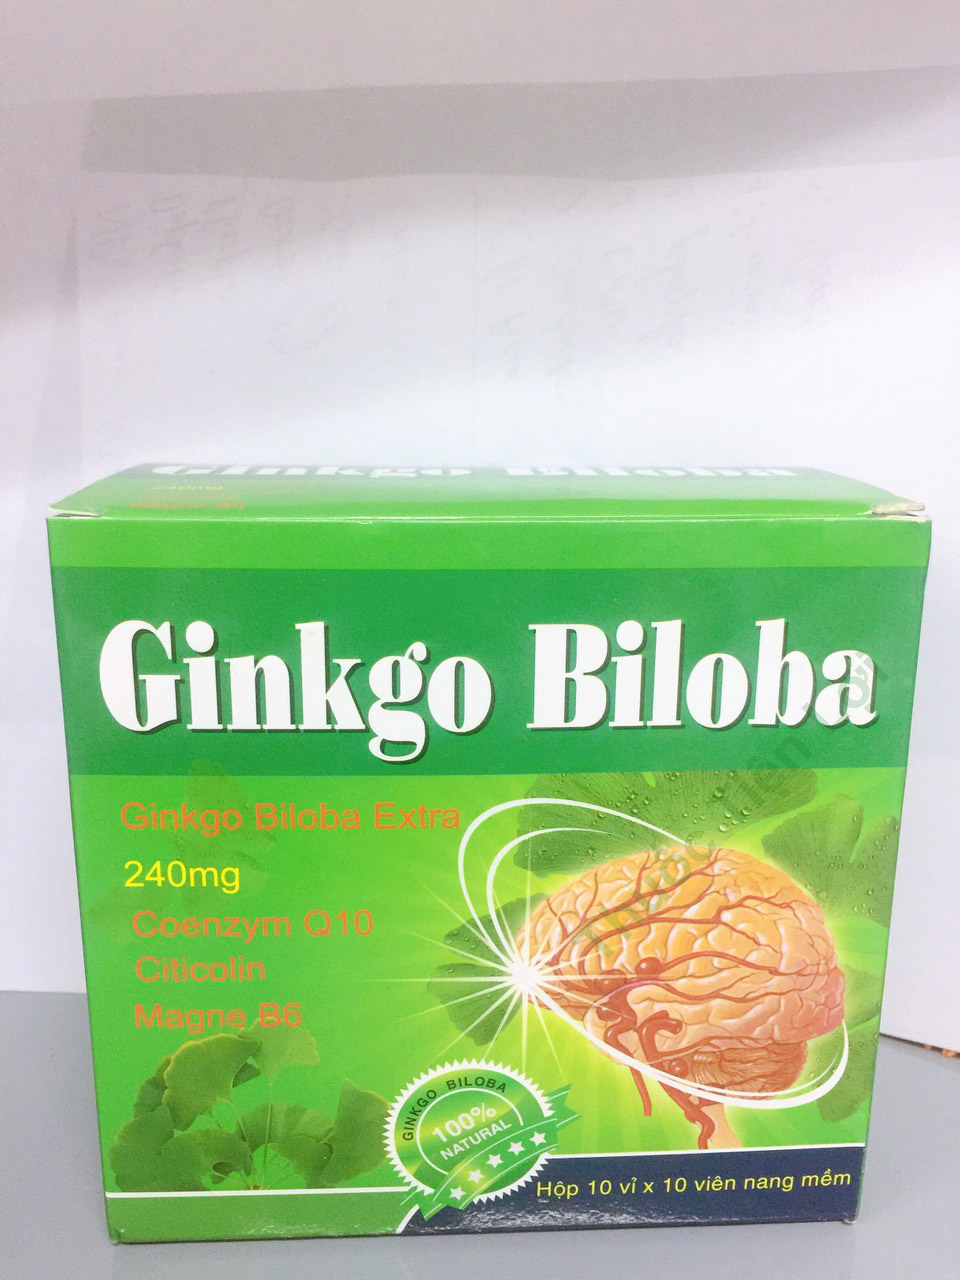 Thông tin về thuốc Ginkgo Biloba USA Pharma